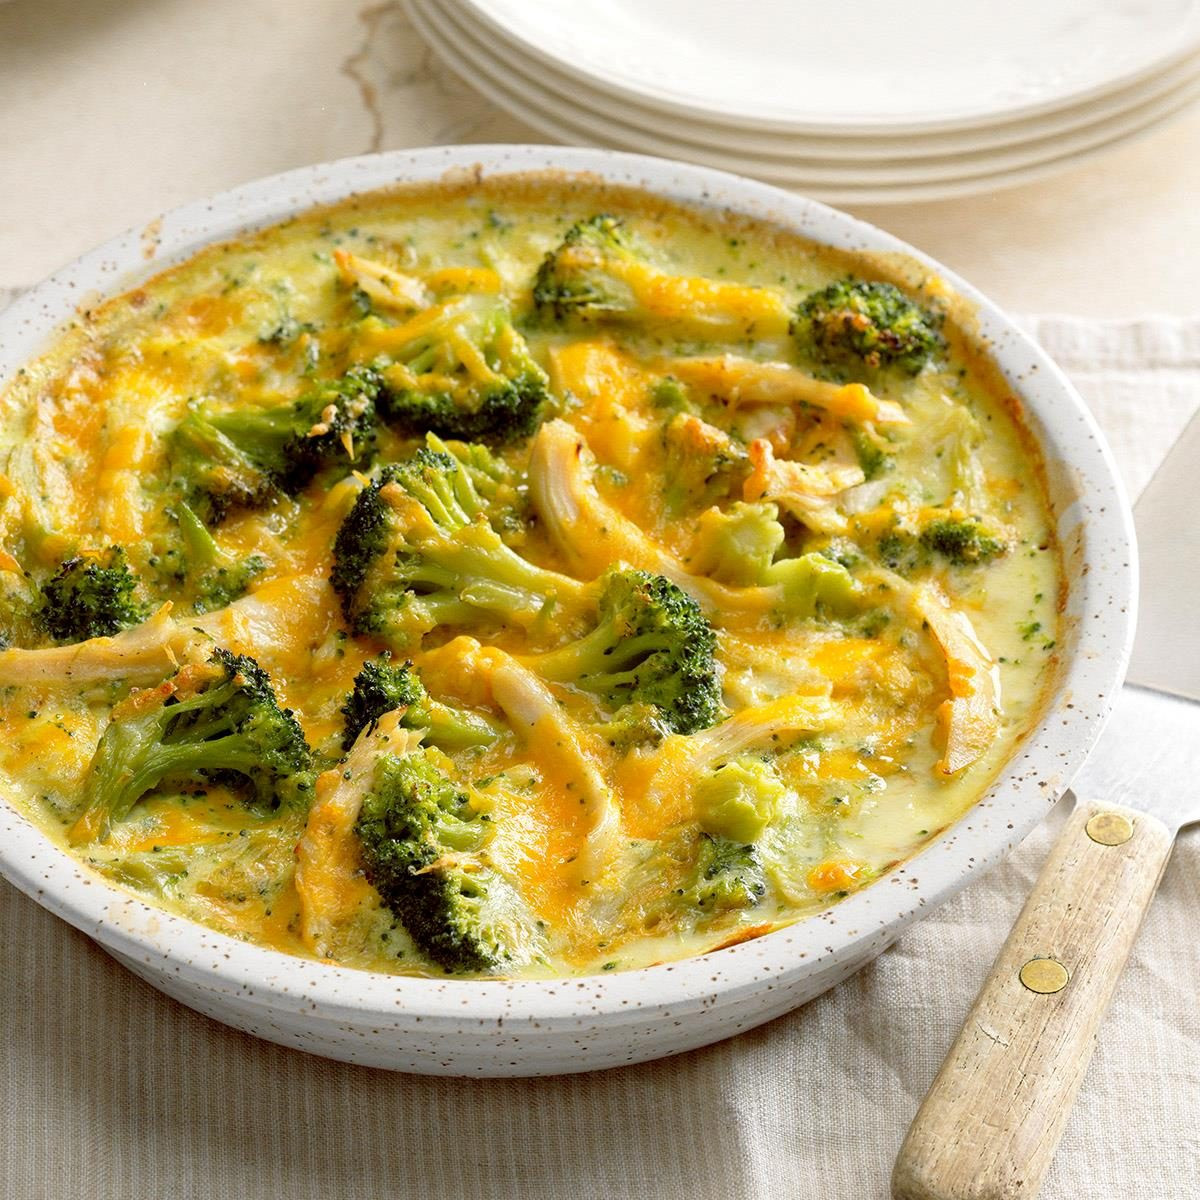 Top 15 Chicken Broccoli Casserole Recipes